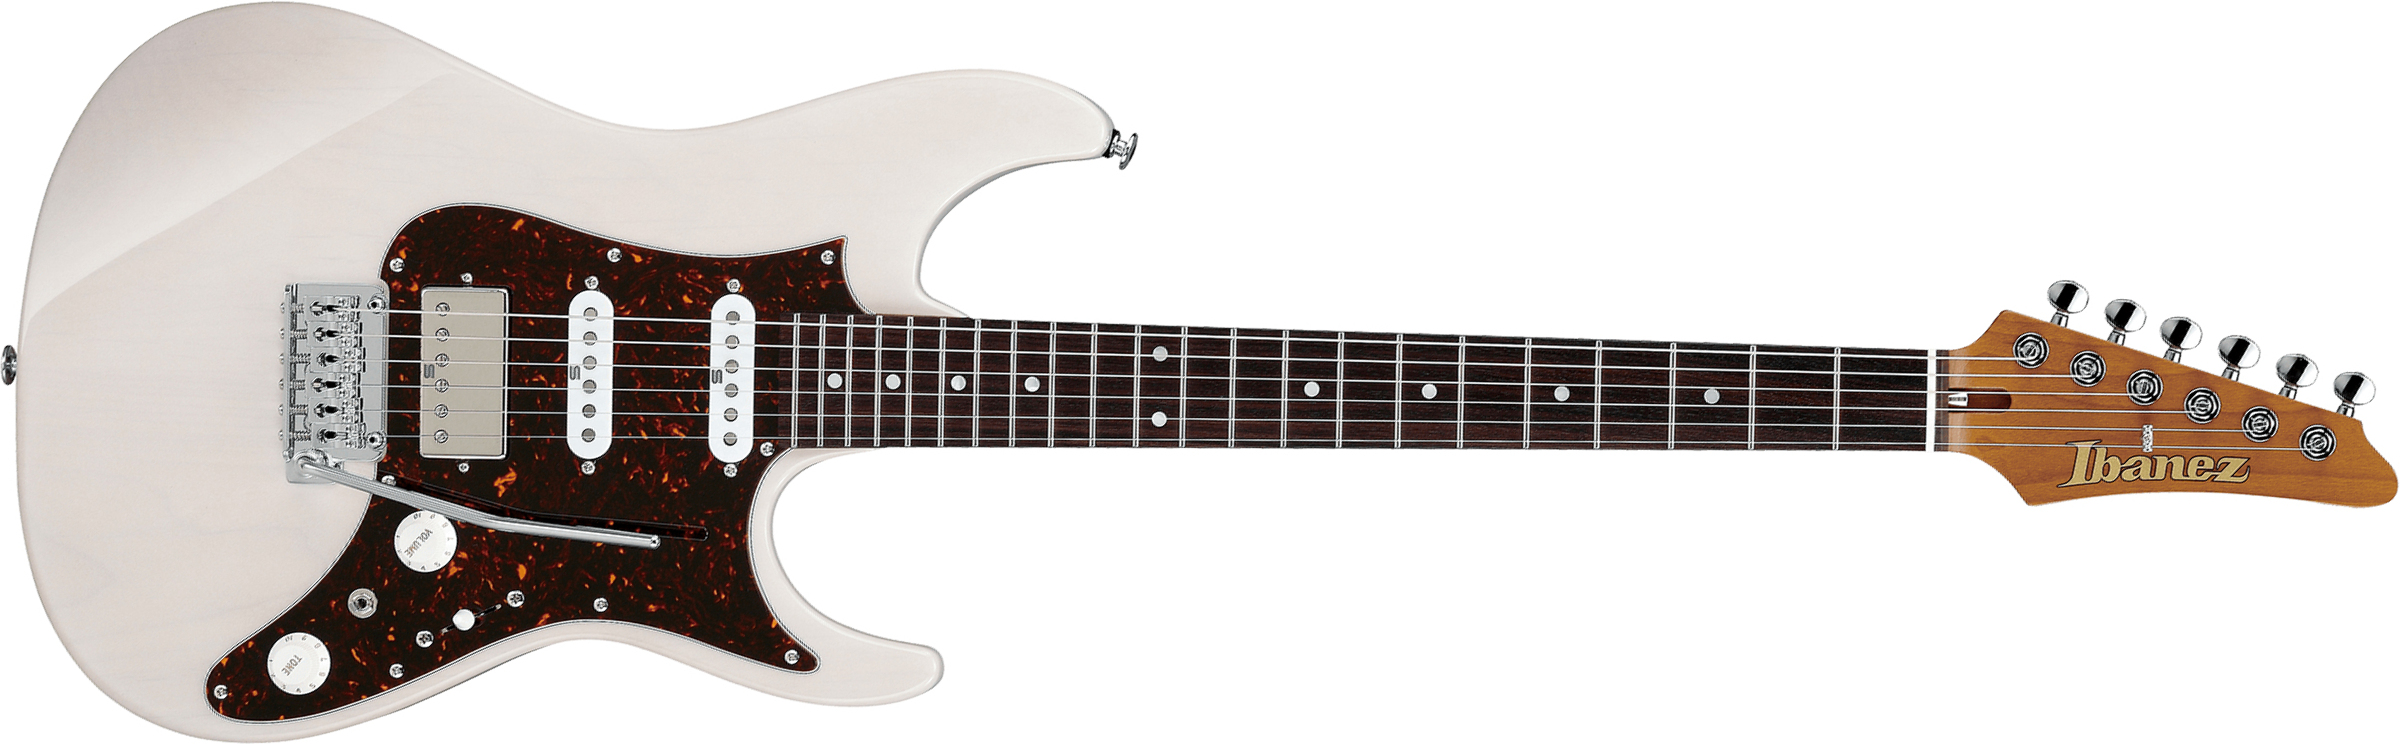 Ibanez Az2204n Awd Prestige Jap Hss Seymour Duncan Trem Rw - Antique White Blonde - Guitarra eléctrica con forma de str. - Main picture